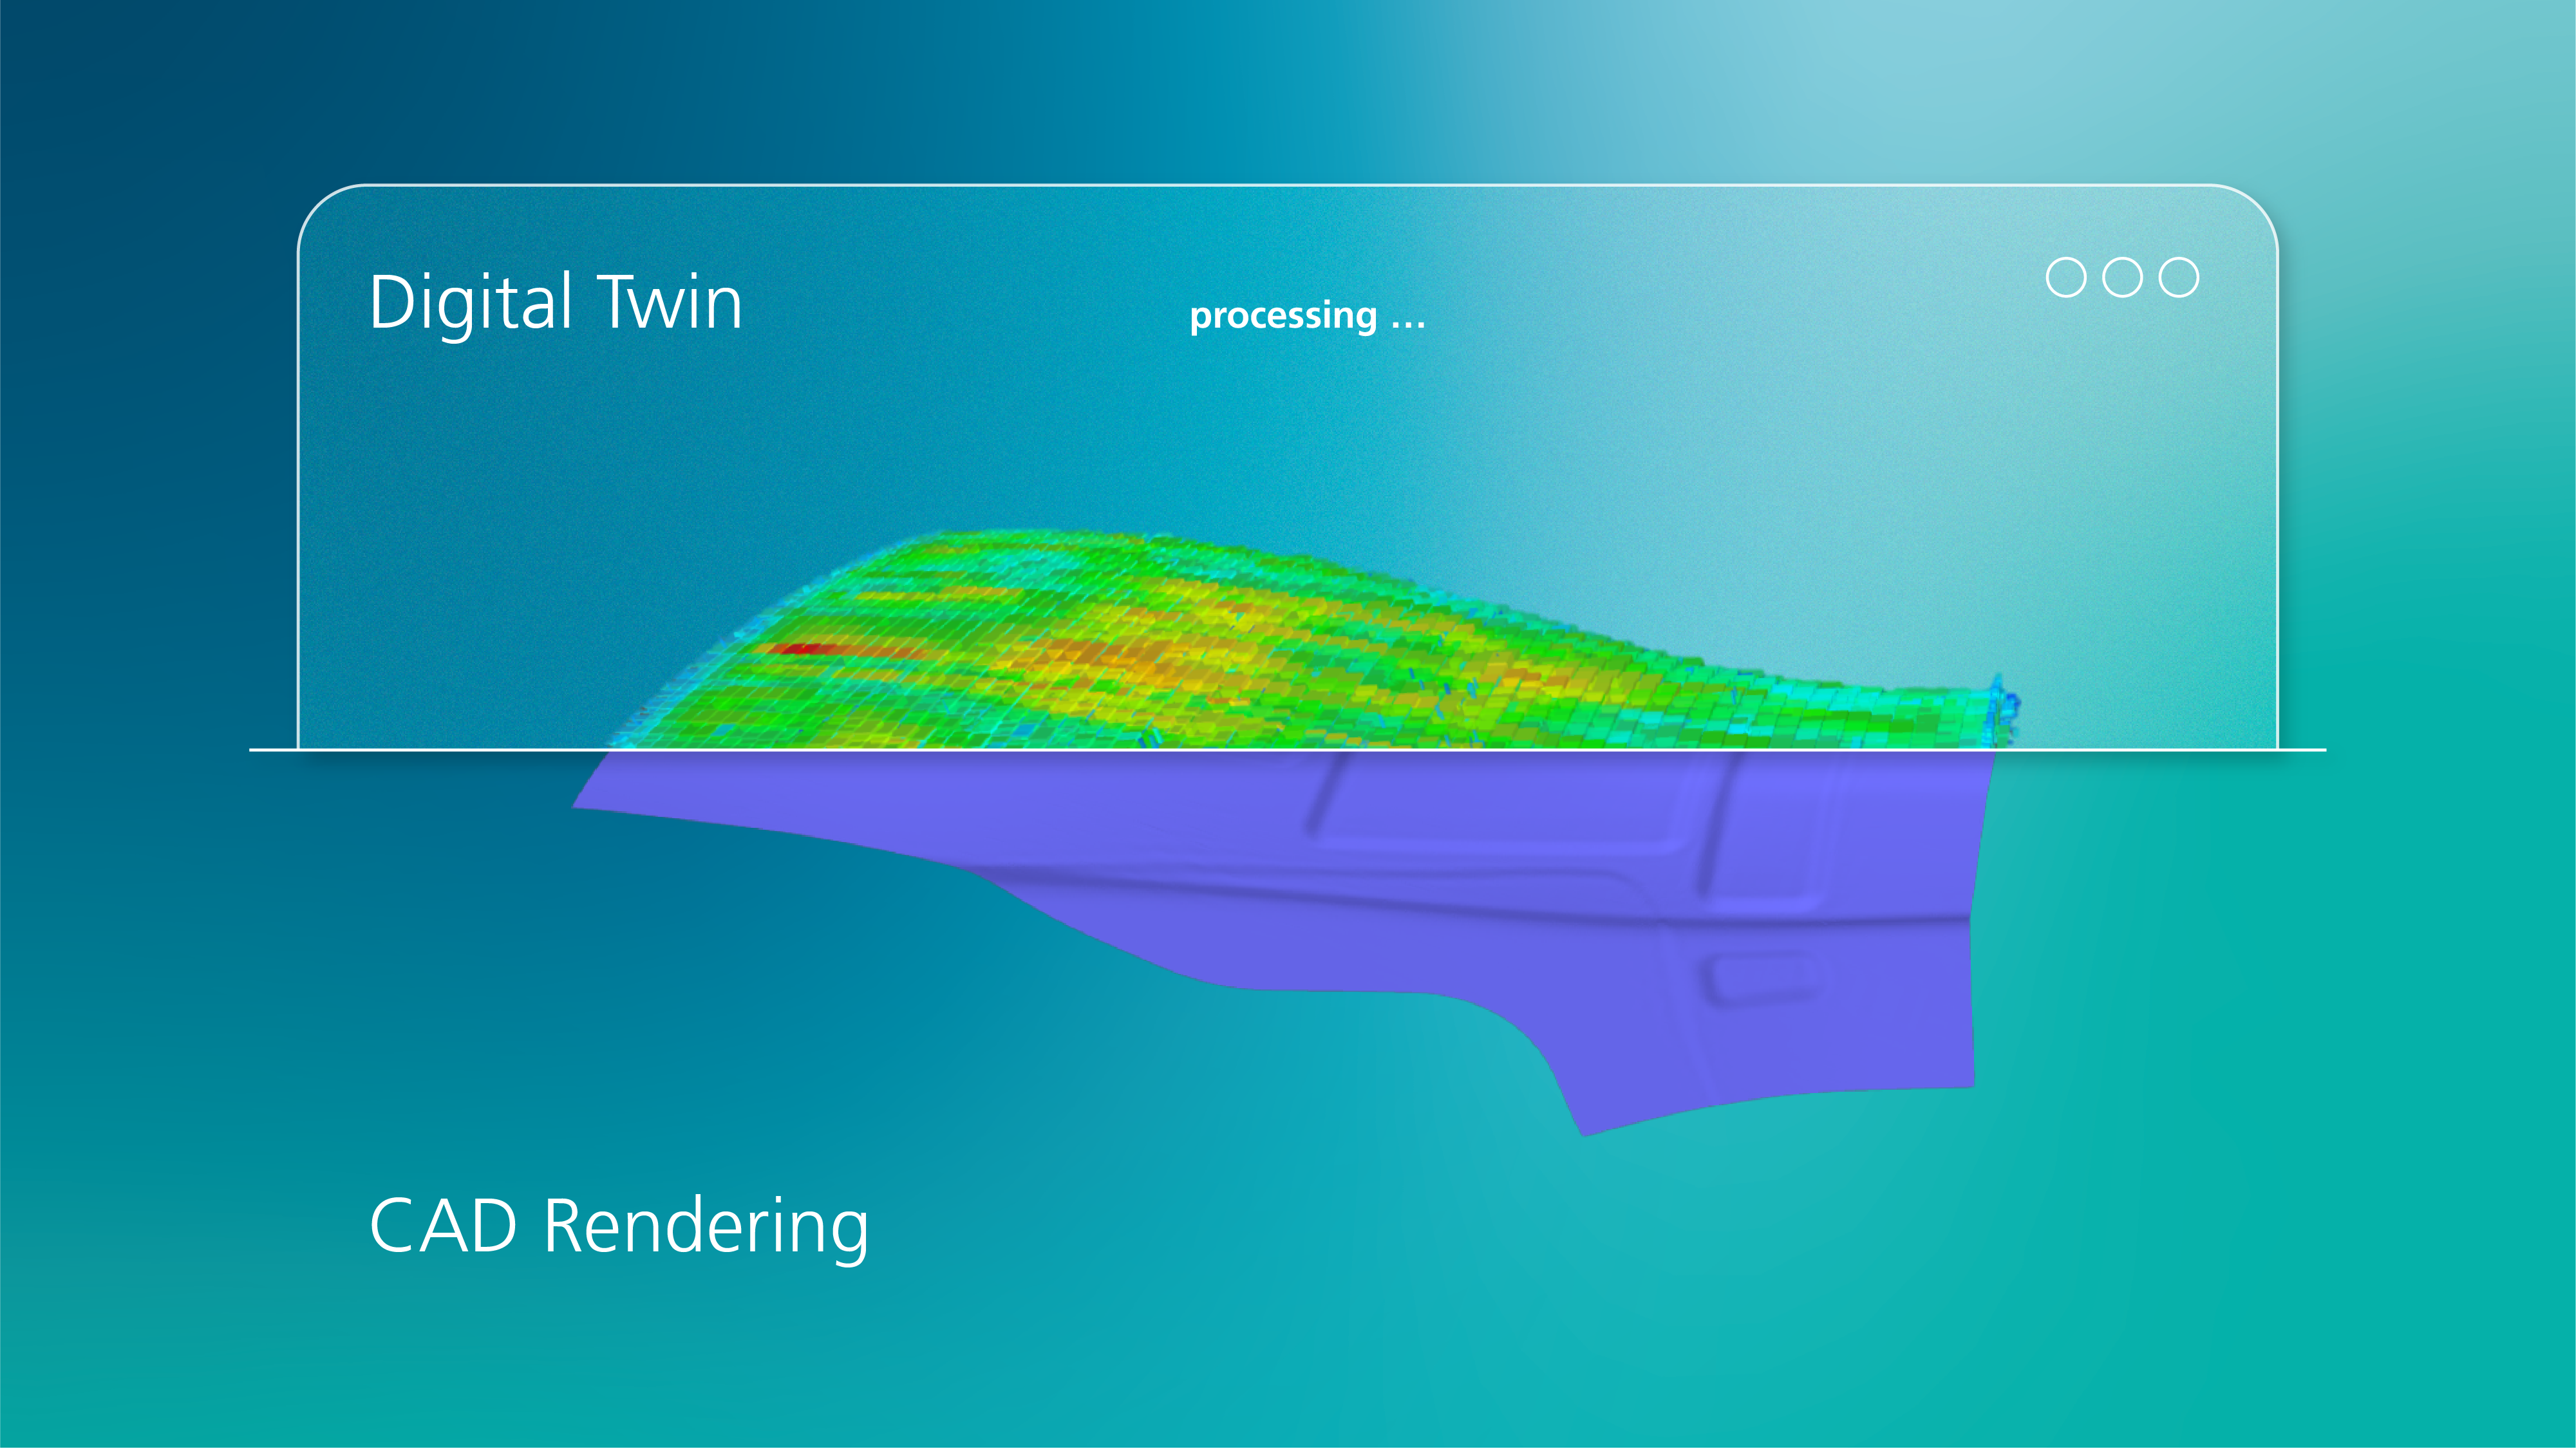 Einsatz von Künstlicher Intelligenz im Fiber Placement: Digitaler Zwilling im CAD Rendering